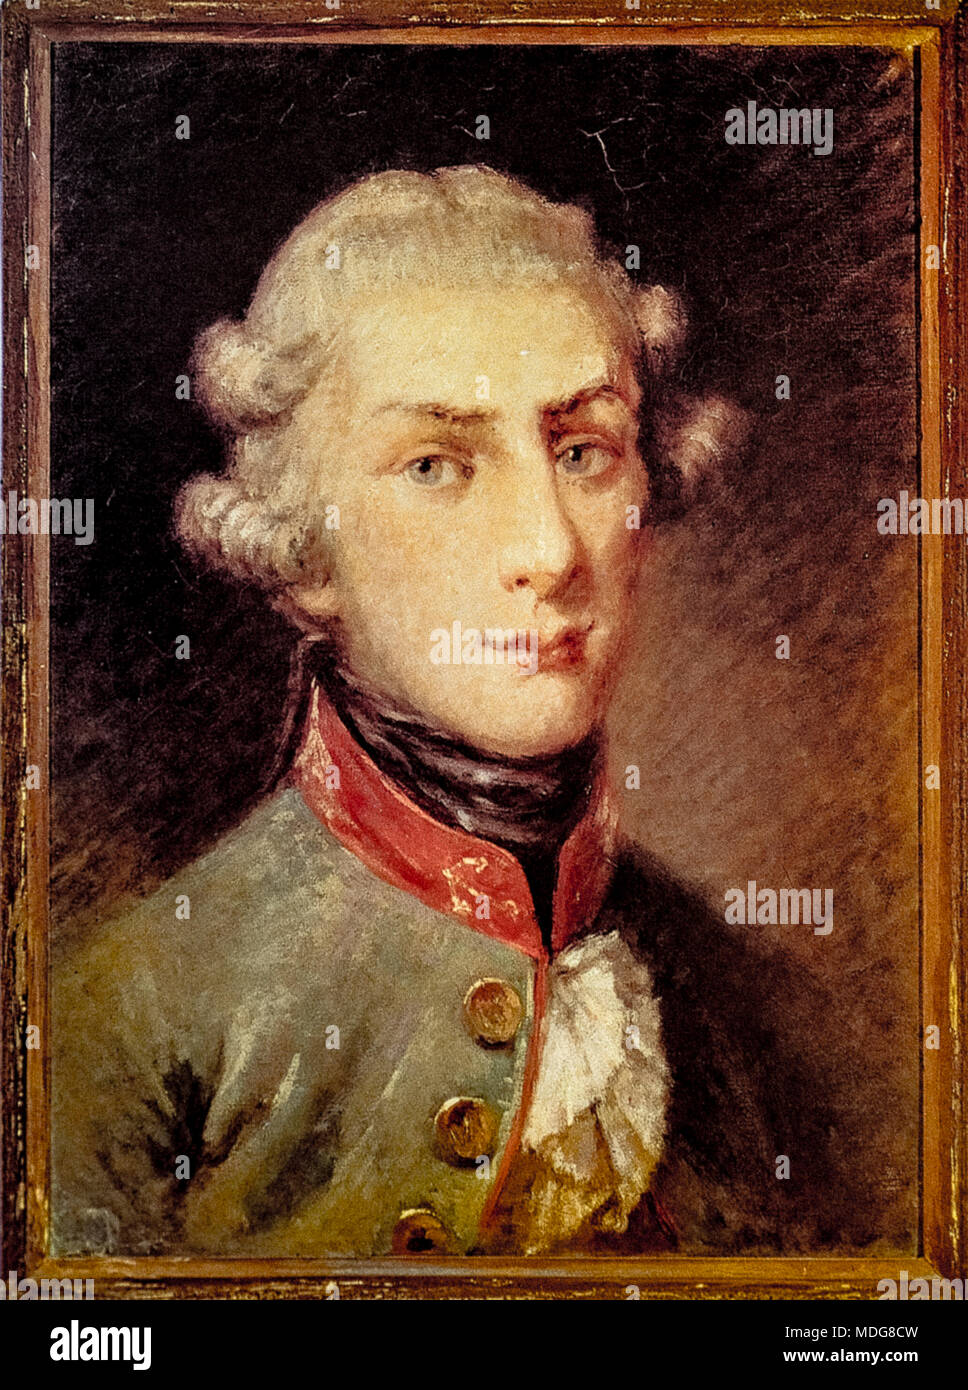 Giusso della Schiava - Portrait de Gennaro Serra di Cassano (Portici, 30 settembre 1772 - Naples, 20 agosto 1799) -patriote italien de la République Napolitaine de 1799. Banque D'Images